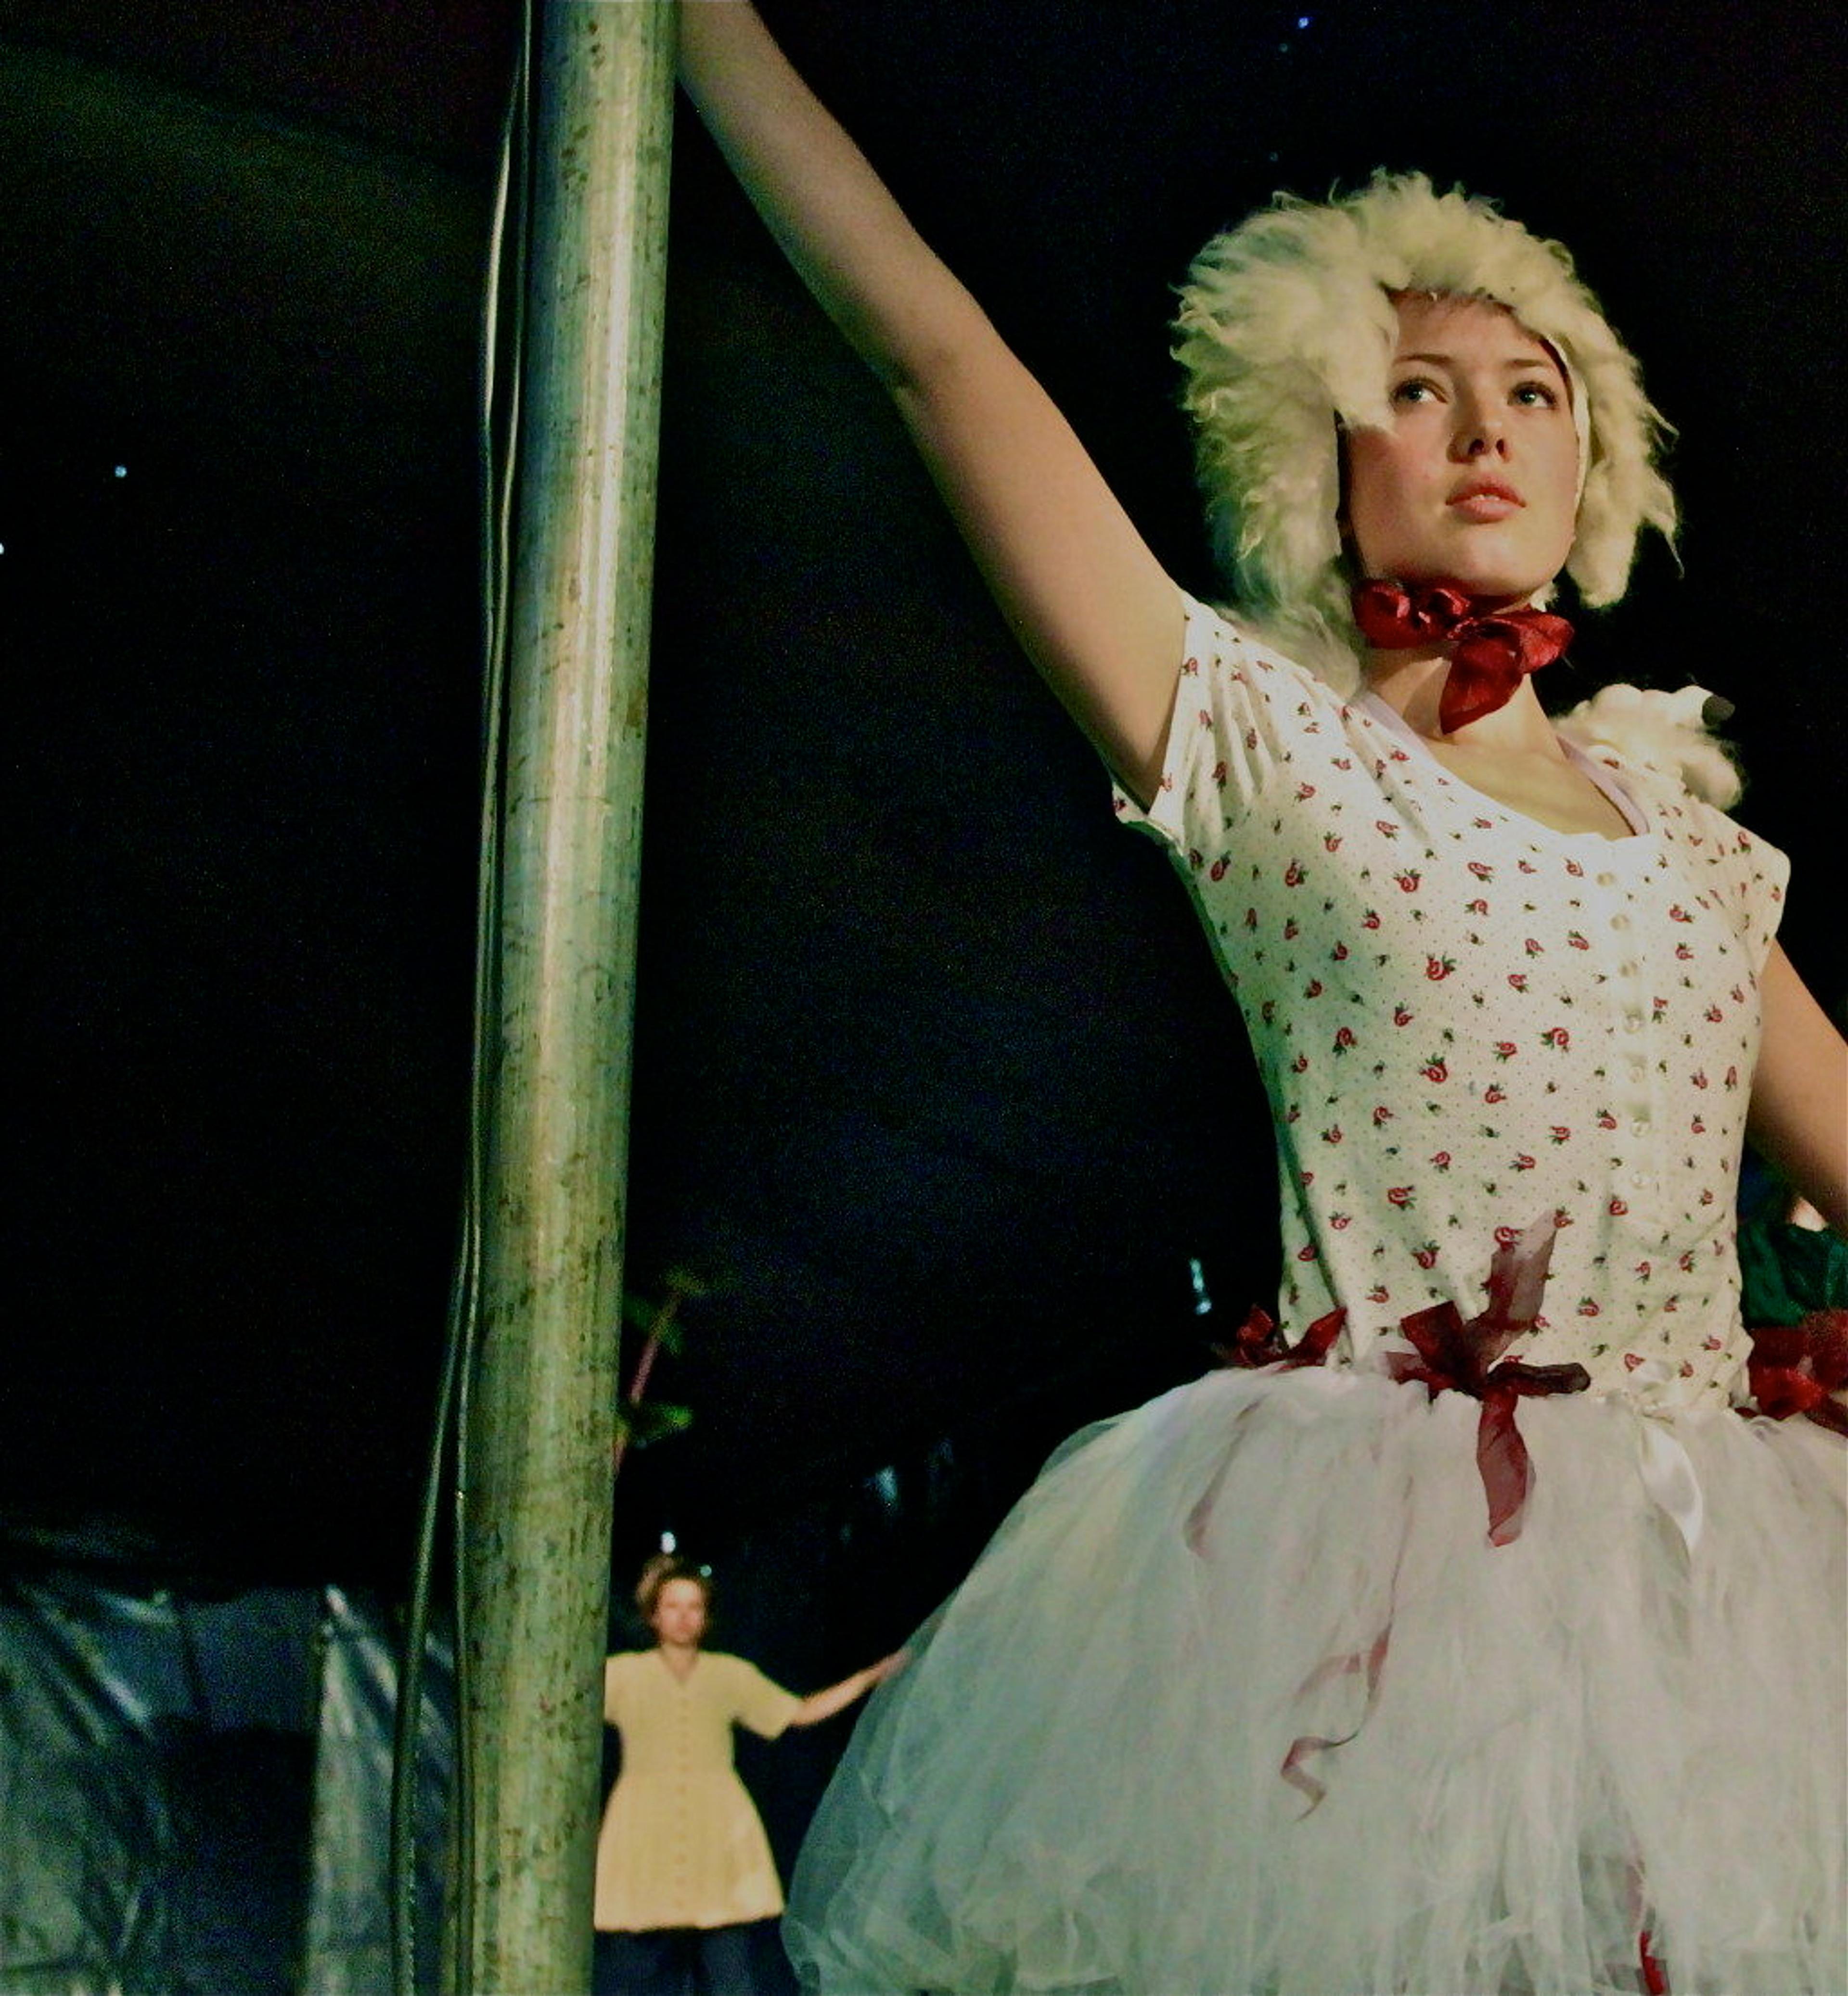 En dame danser ikledd hvit parykk og hvit kjole med røde prikker.